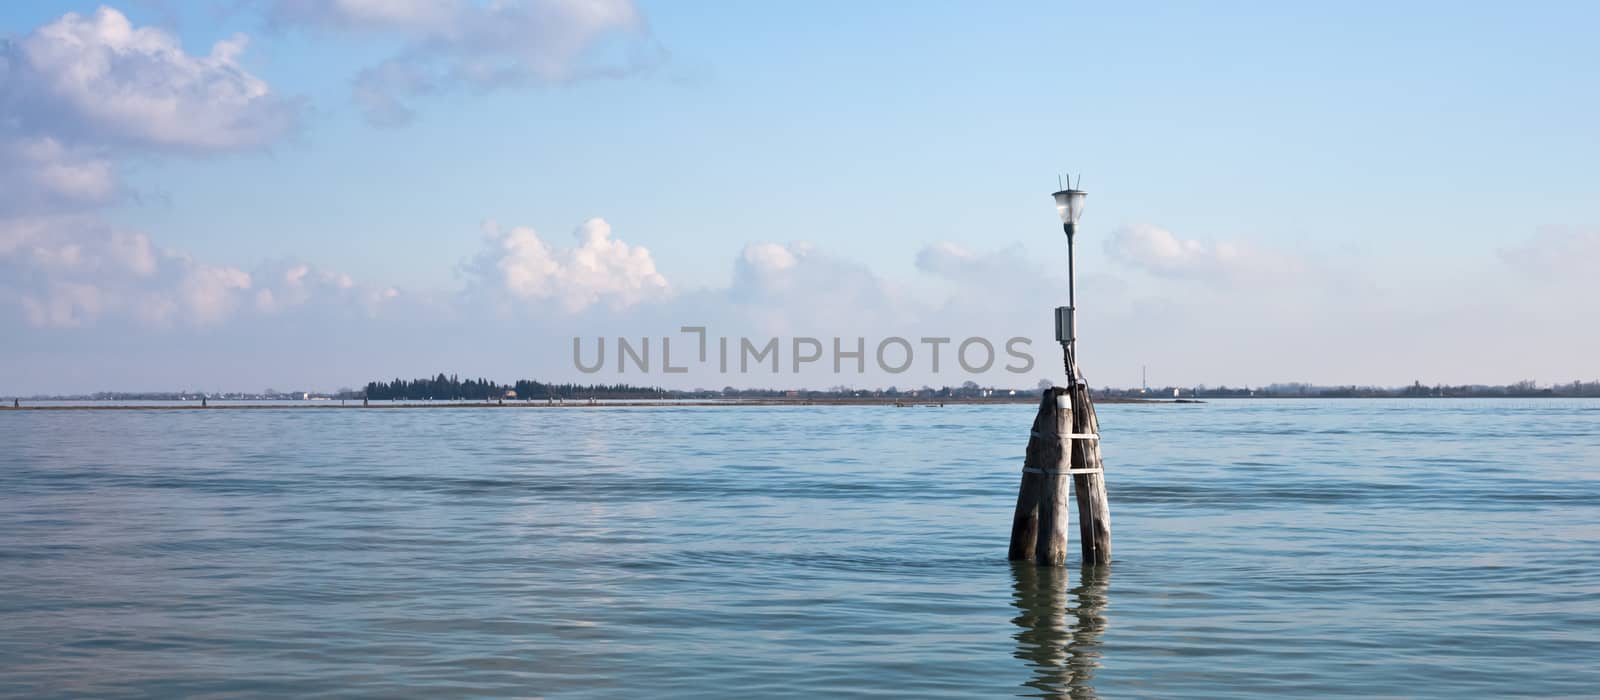 Venetian buoy along fairway channel between the islands